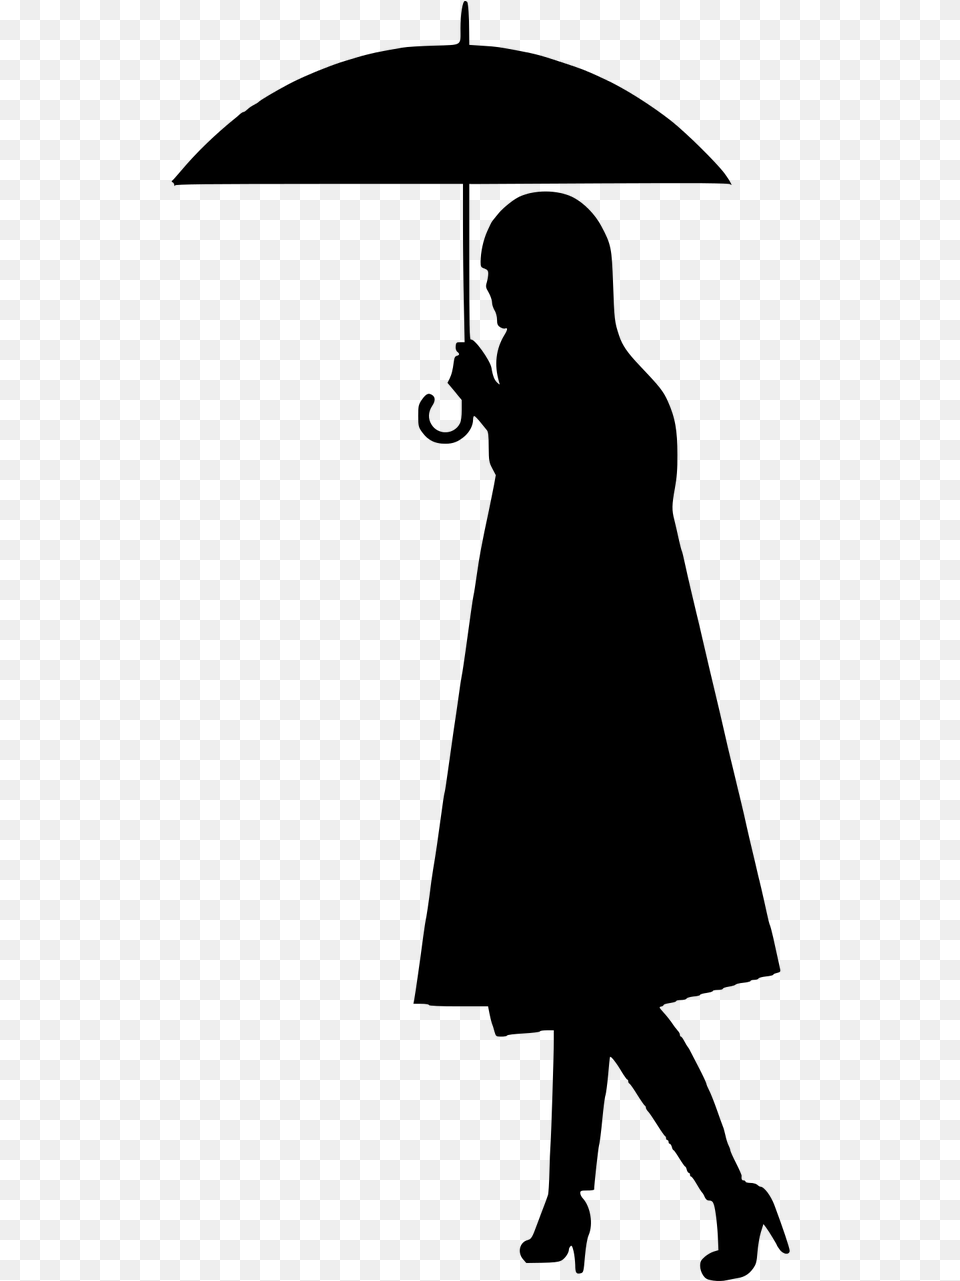 Silueta De Payaso Con Sombrilla Clipart Download Woman With Umbrella Silhouette, Gray Free Png